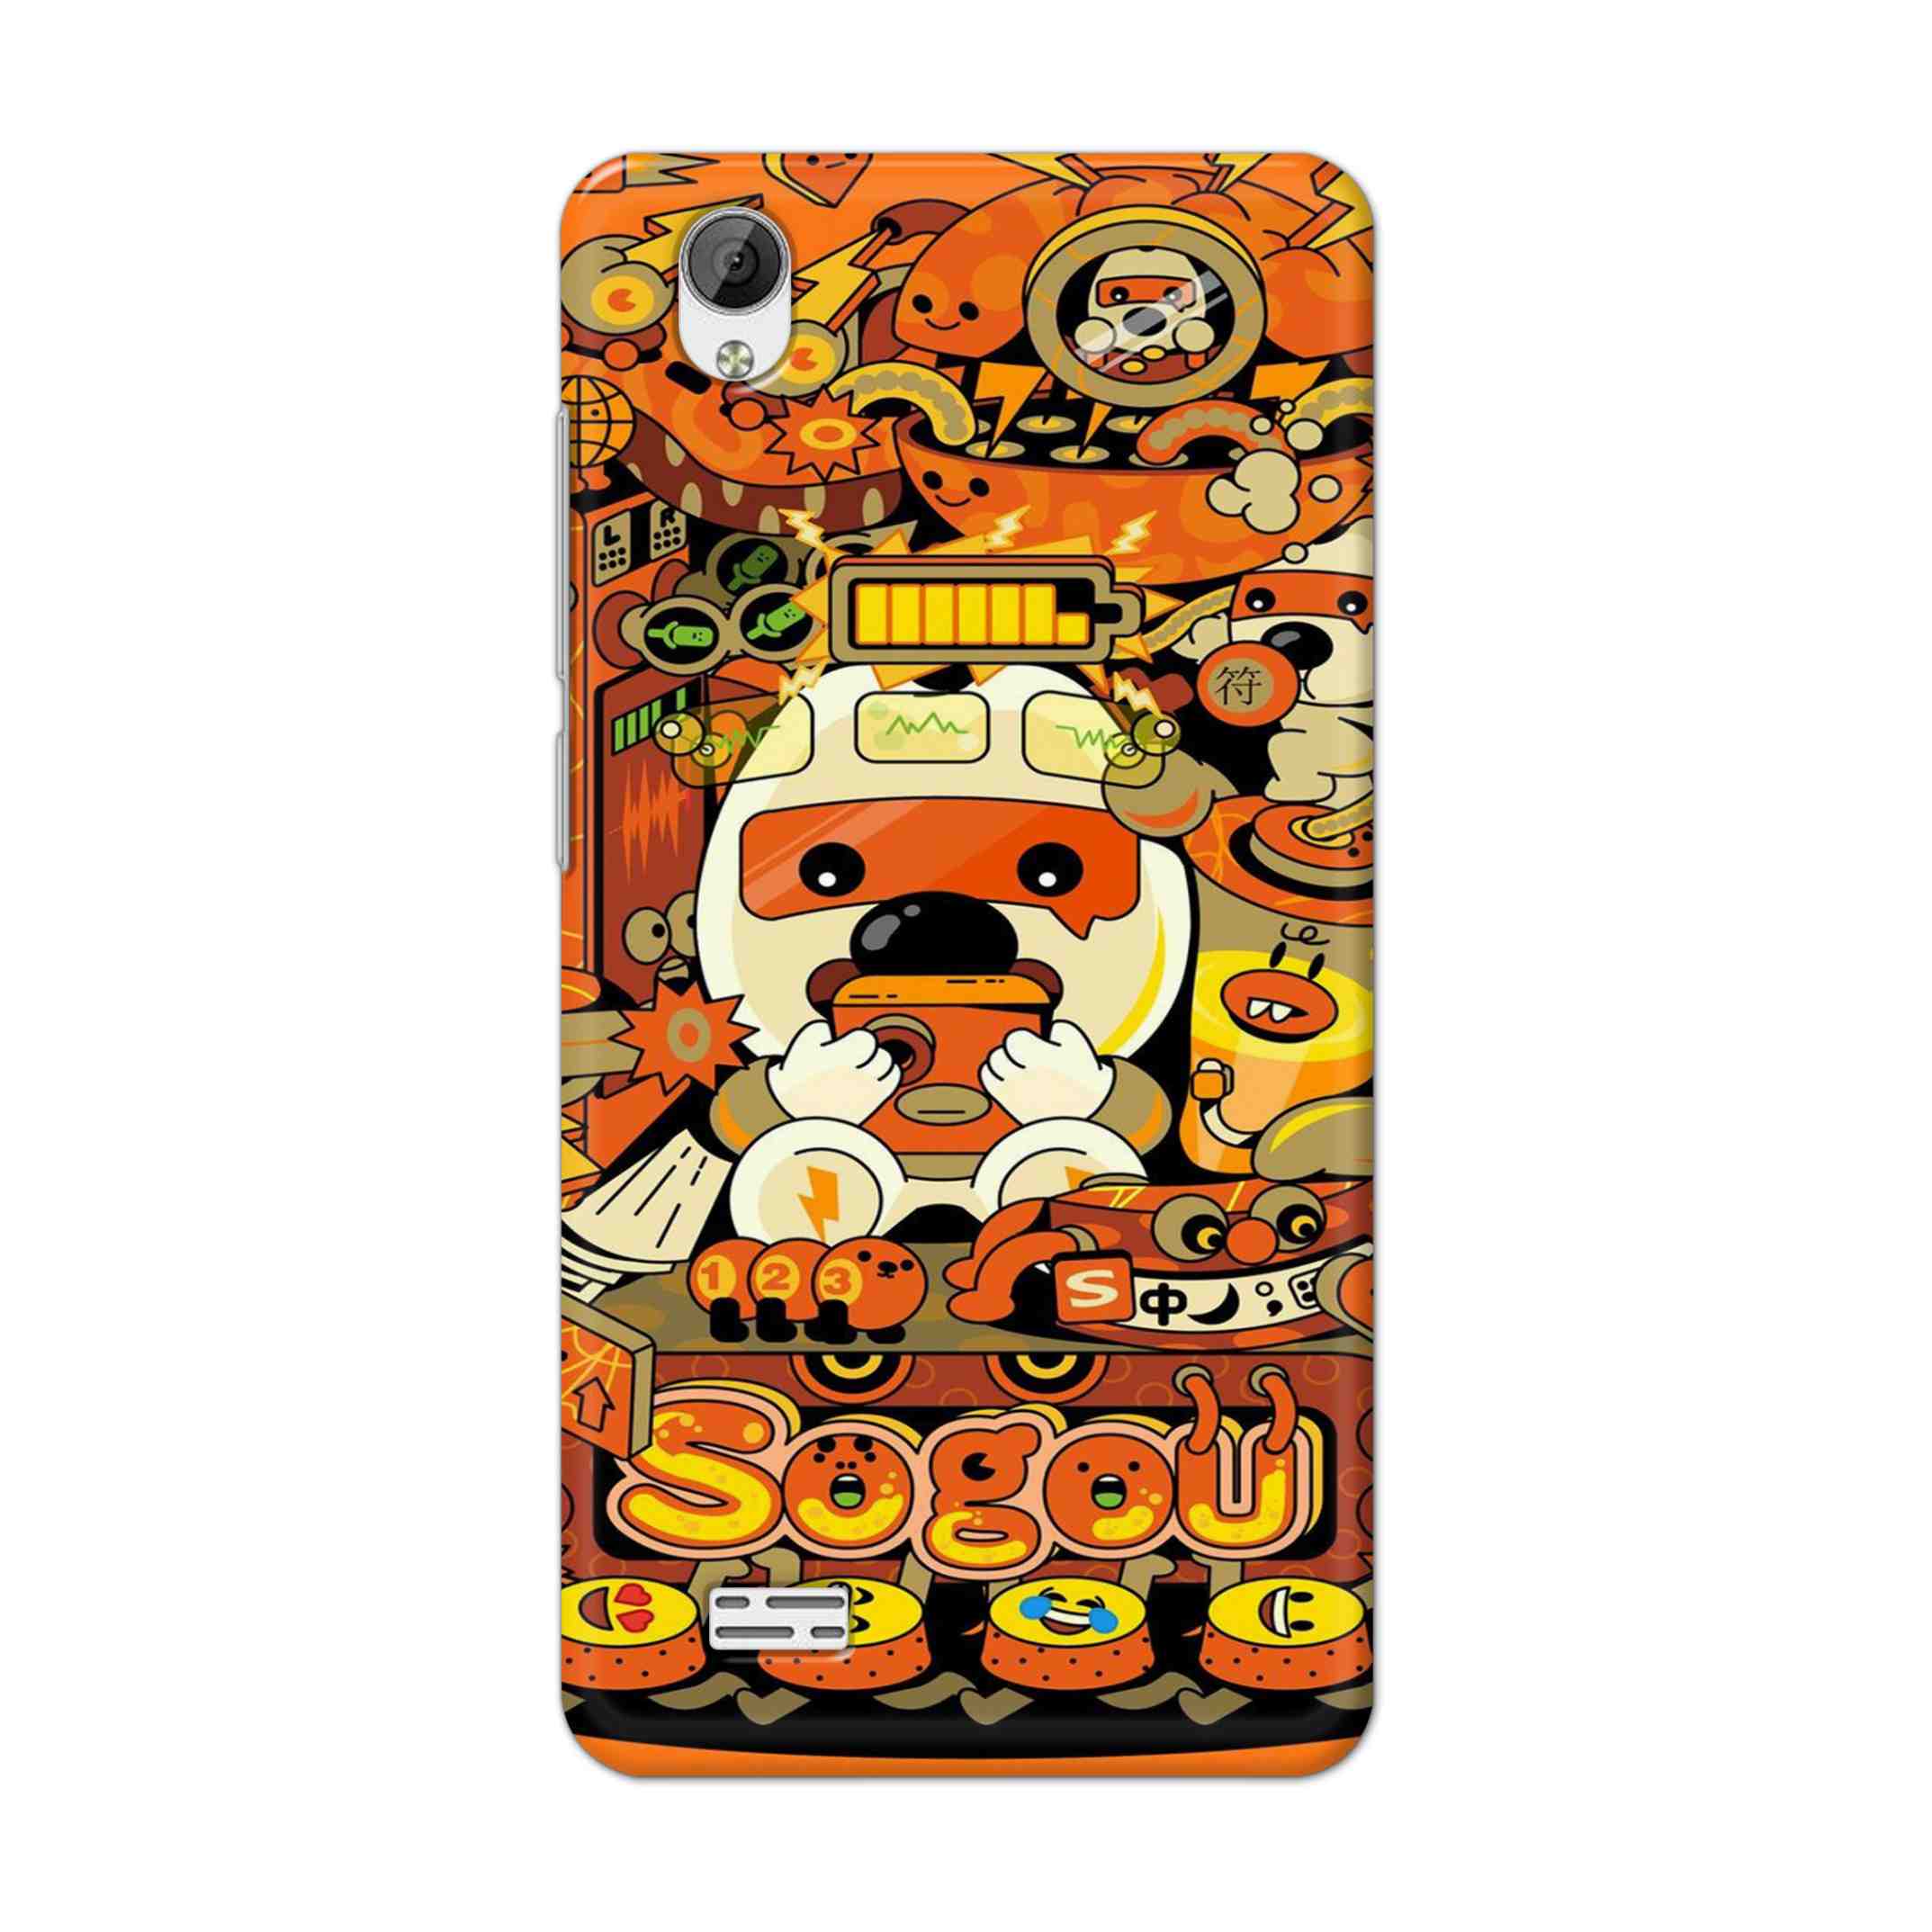 Buy Sogou Hard Back Mobile Phone Case Cover For Vivo Y31 Online